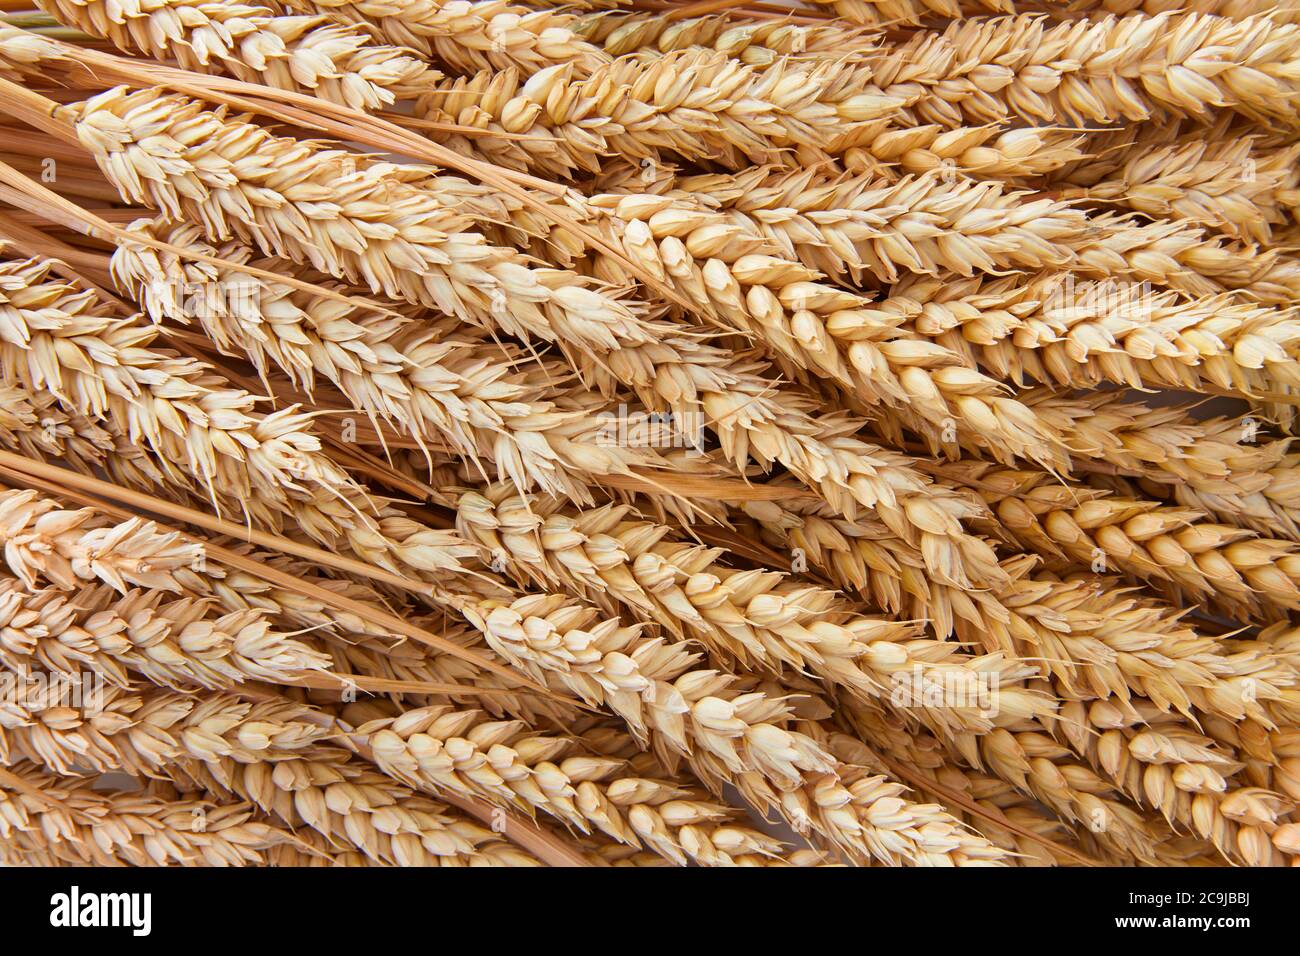 Ears of wheat, full frame. Stock Photo